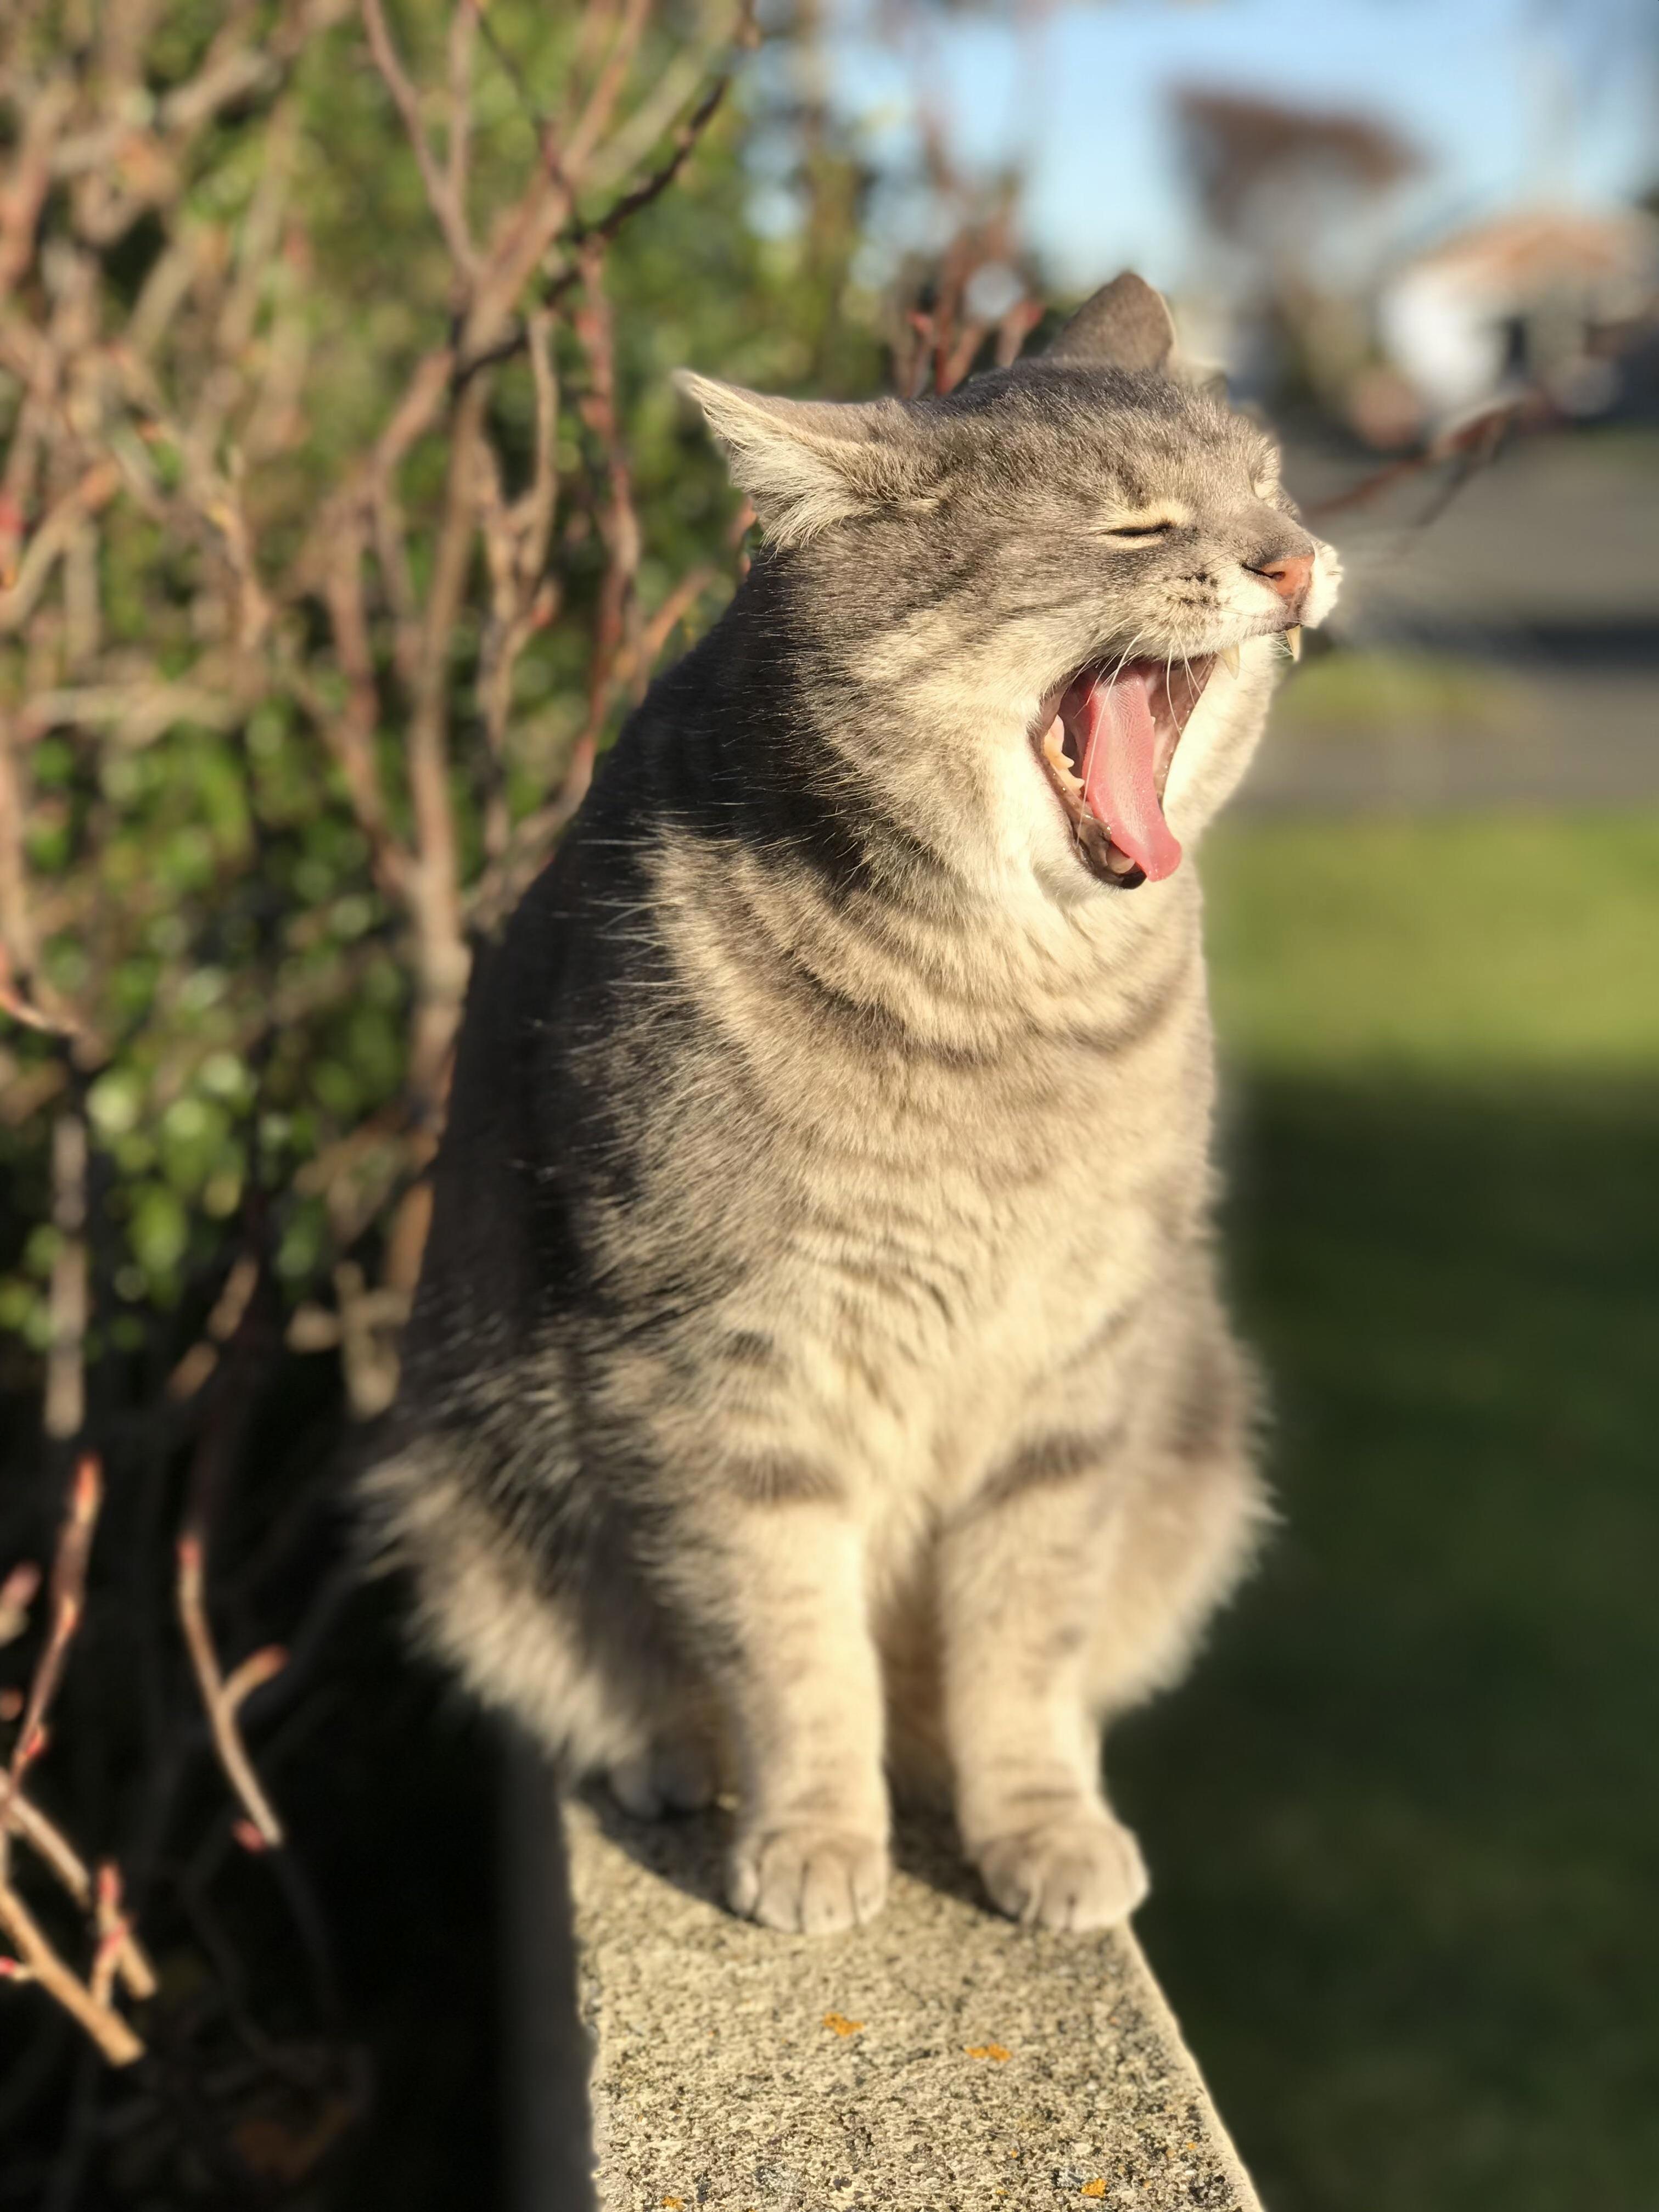 Fat cat taz yawning in the sun 